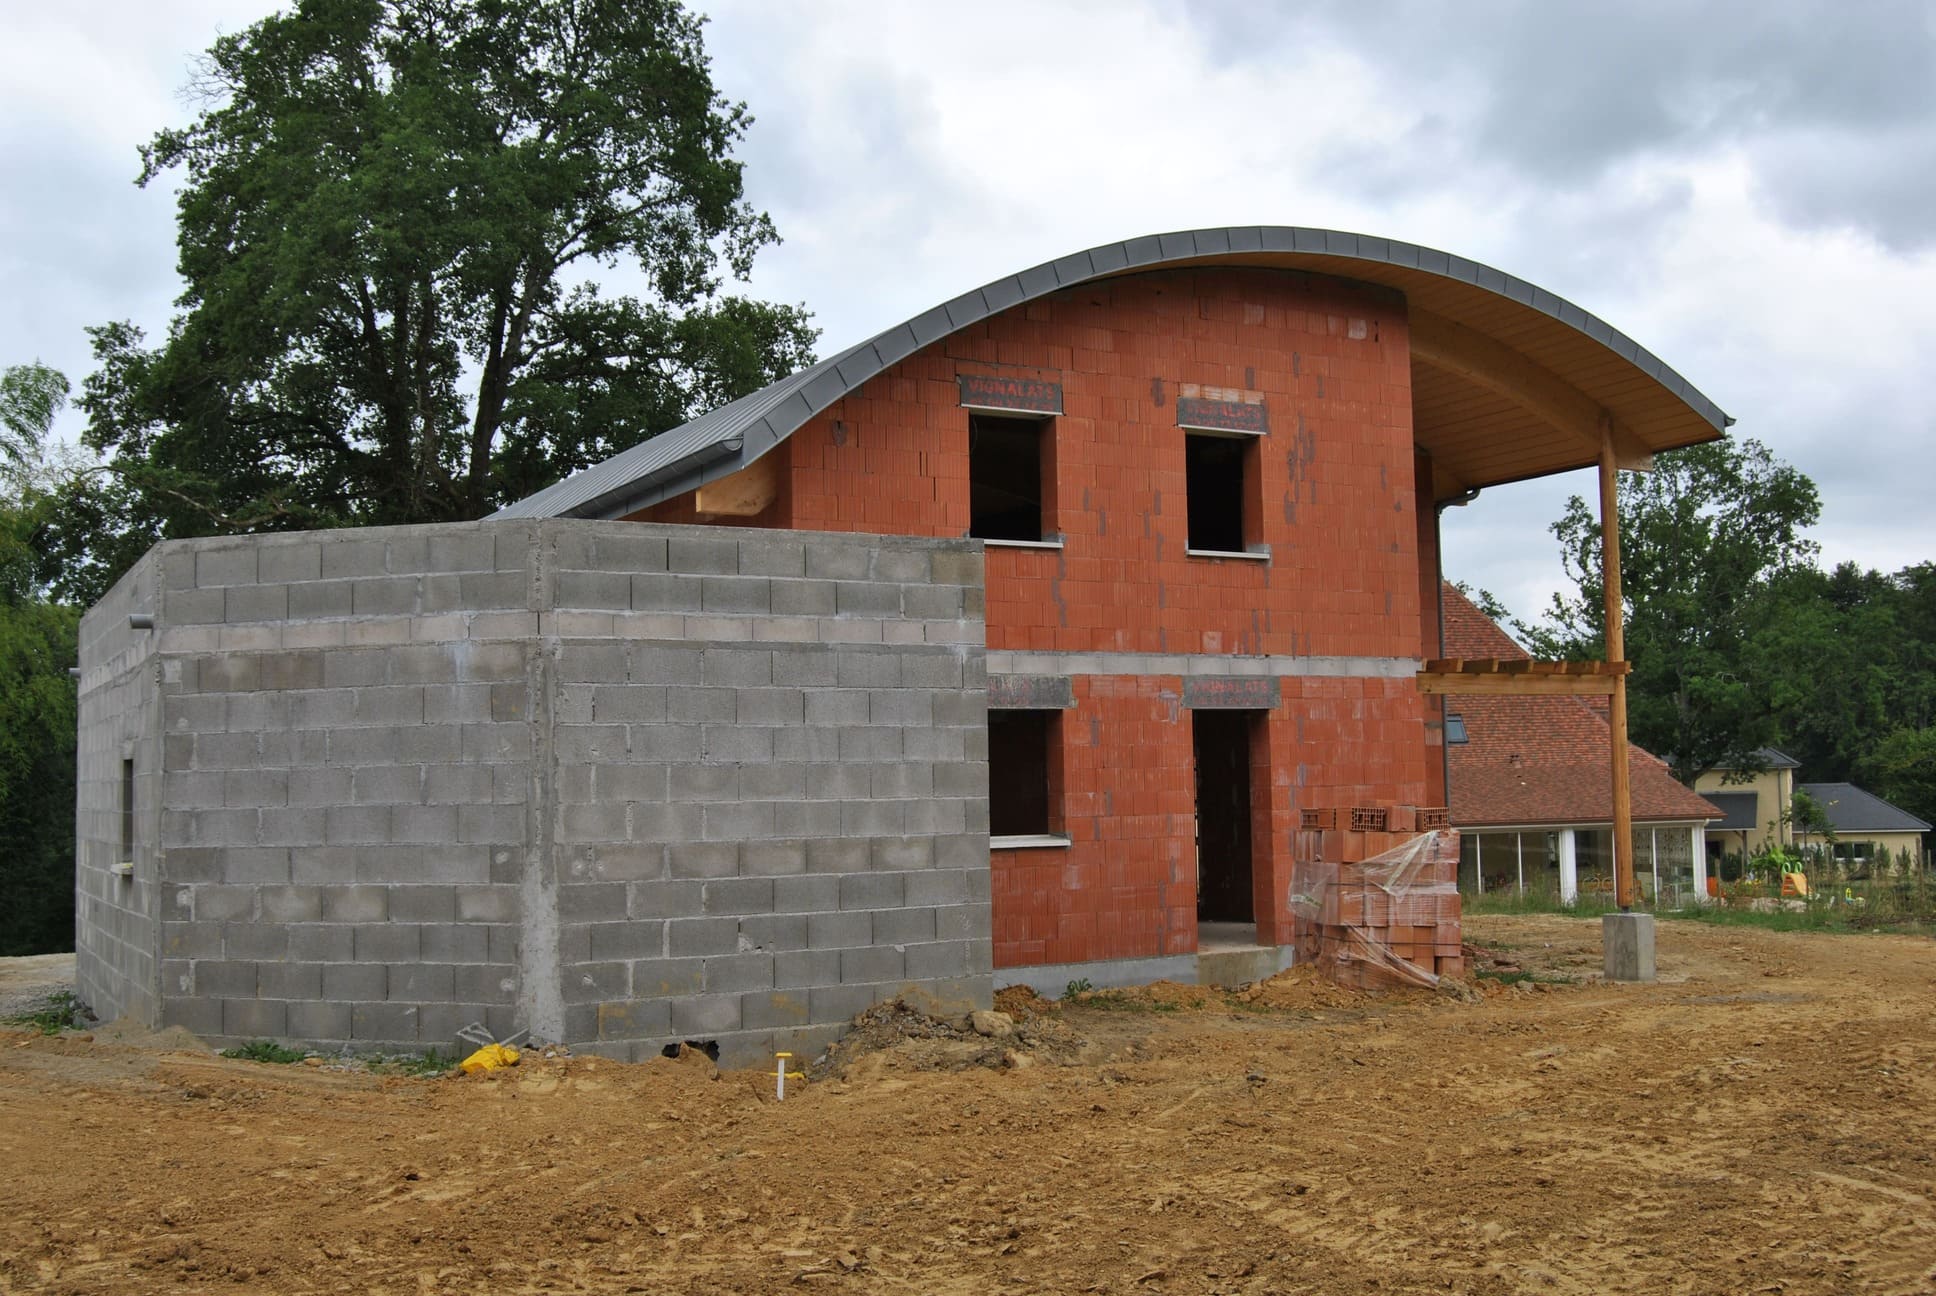 Photo d'un chantier de maçonnerie, on y voit une maison sur deux étages avec le toit arrondi et une charpente en bois. Une partie de la maison est en brique et sur un côté il y a une extension en parpaing gris.